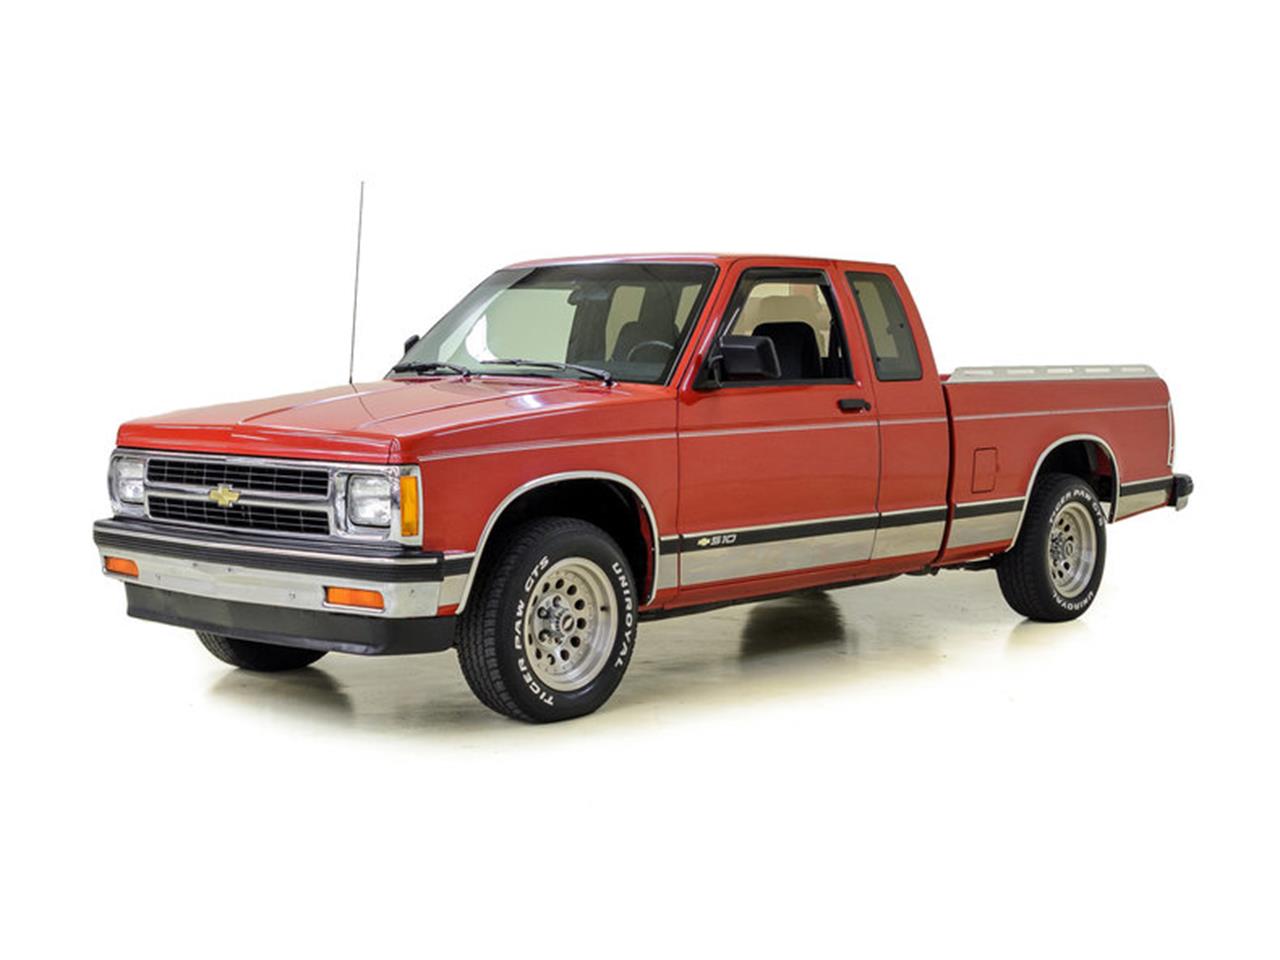 For Sale: 1991 Chevrolet S10 in Concord, North Carolina.